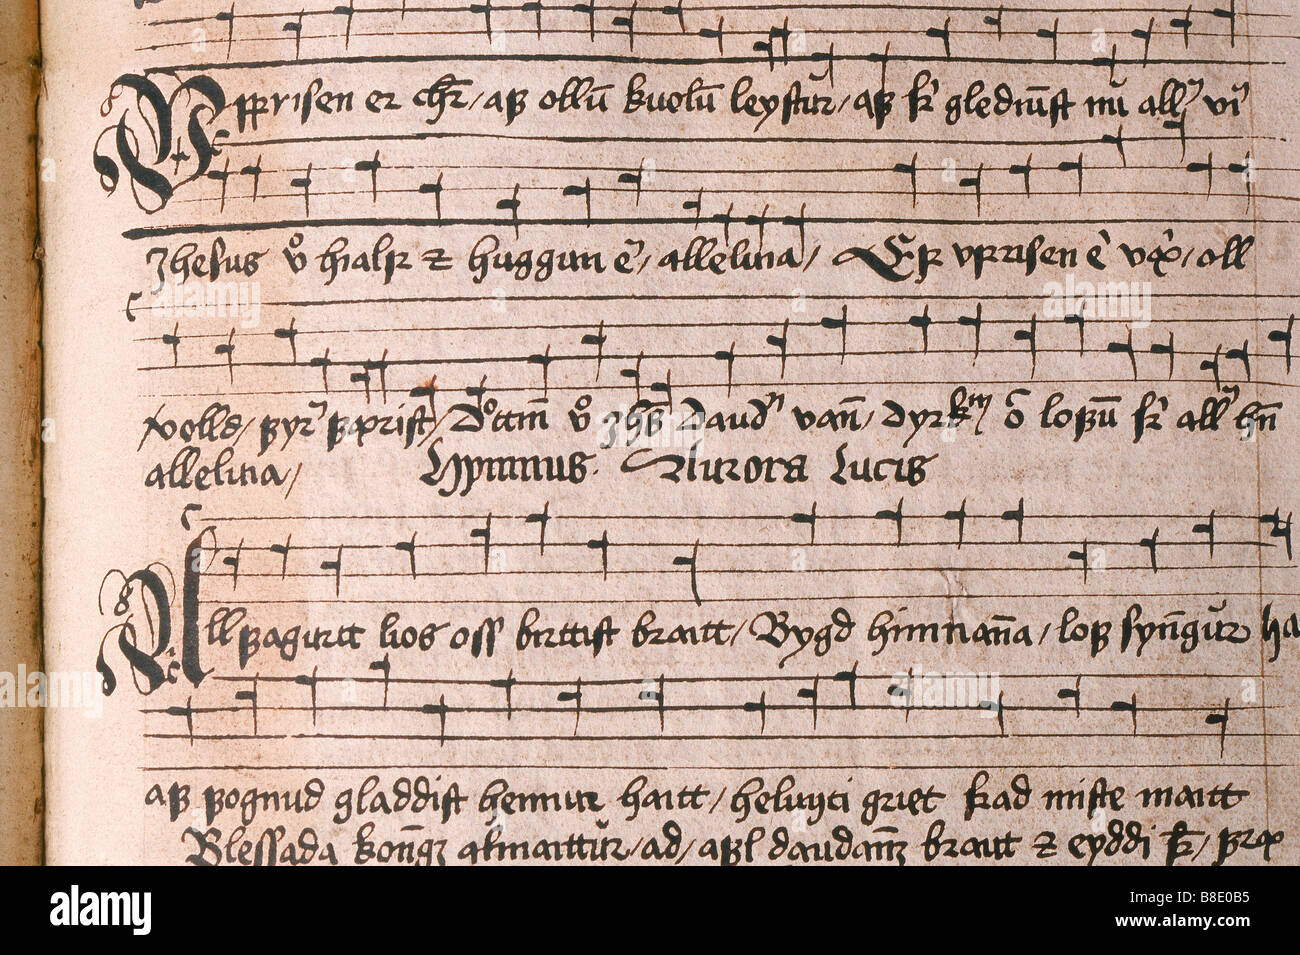 12ème-14ème siècle manuscrits musicaux des Sagas islandaises à la Bibliothèque nationale, Reykjavik Islande Banque D'Images